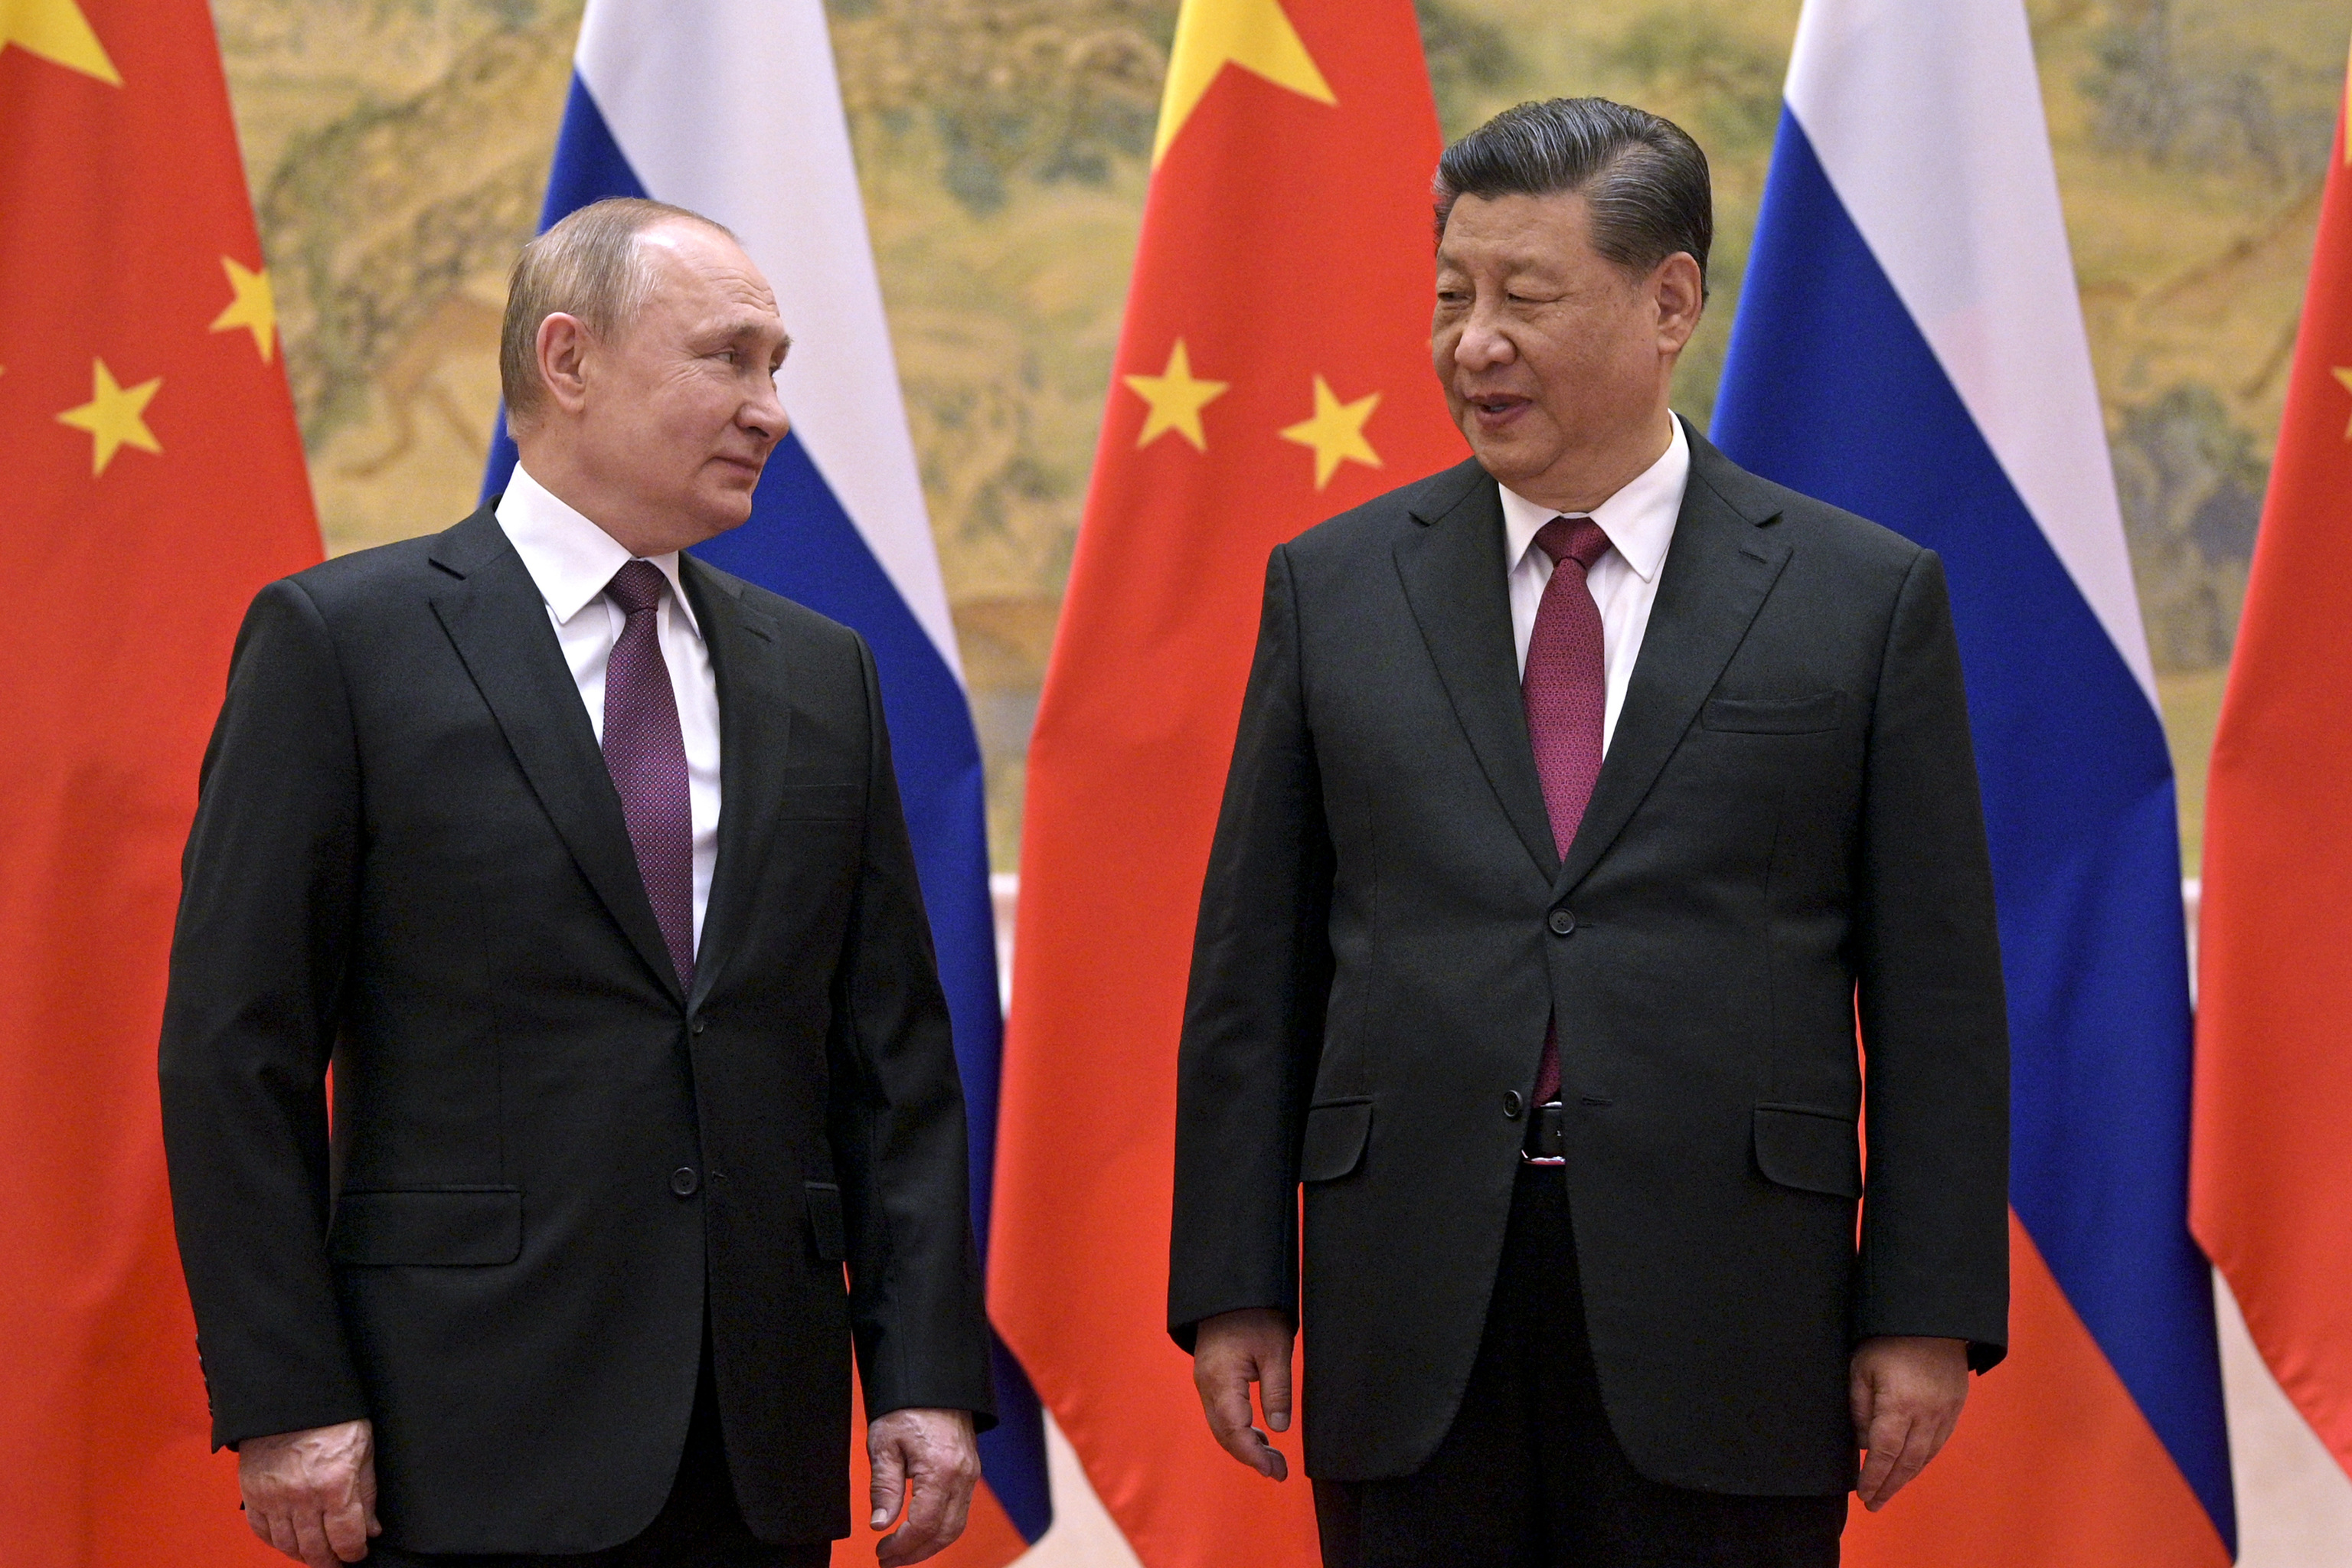 Vladimir Putin and Xi Jinping in Peki